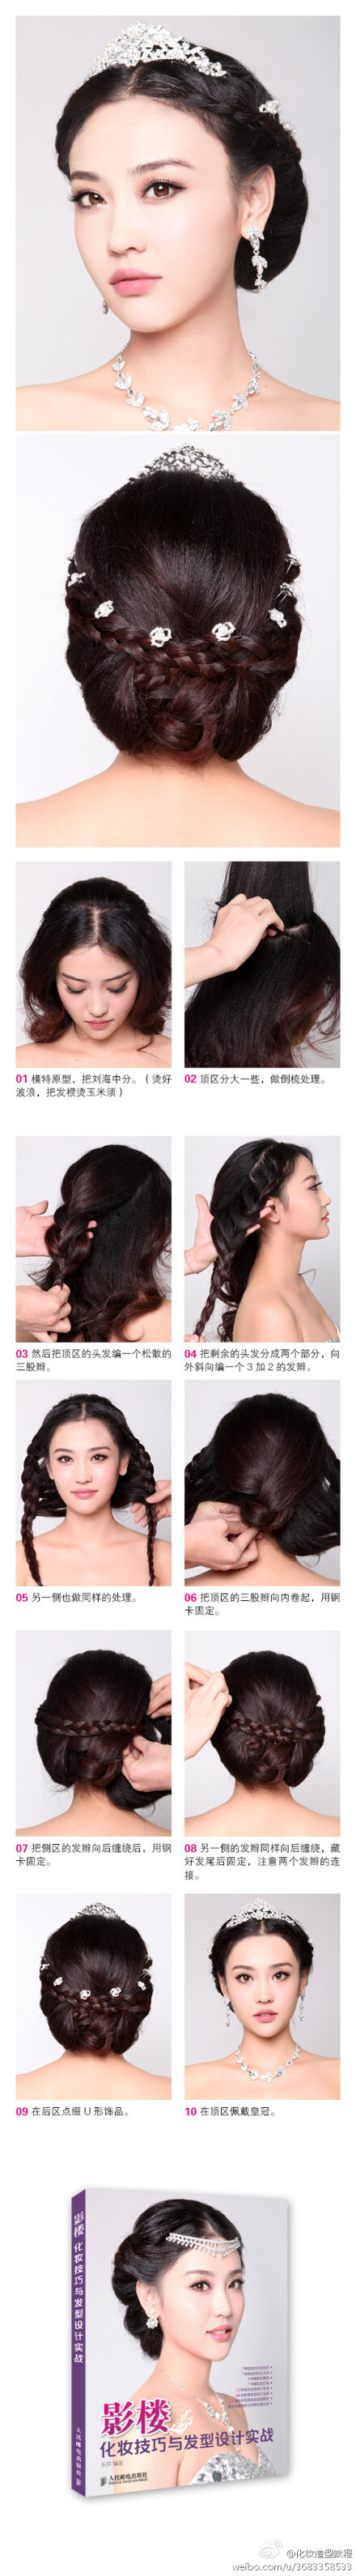 优雅大气韩式发型教程，摘自图书《影楼 化妆技巧与发型设计实战》